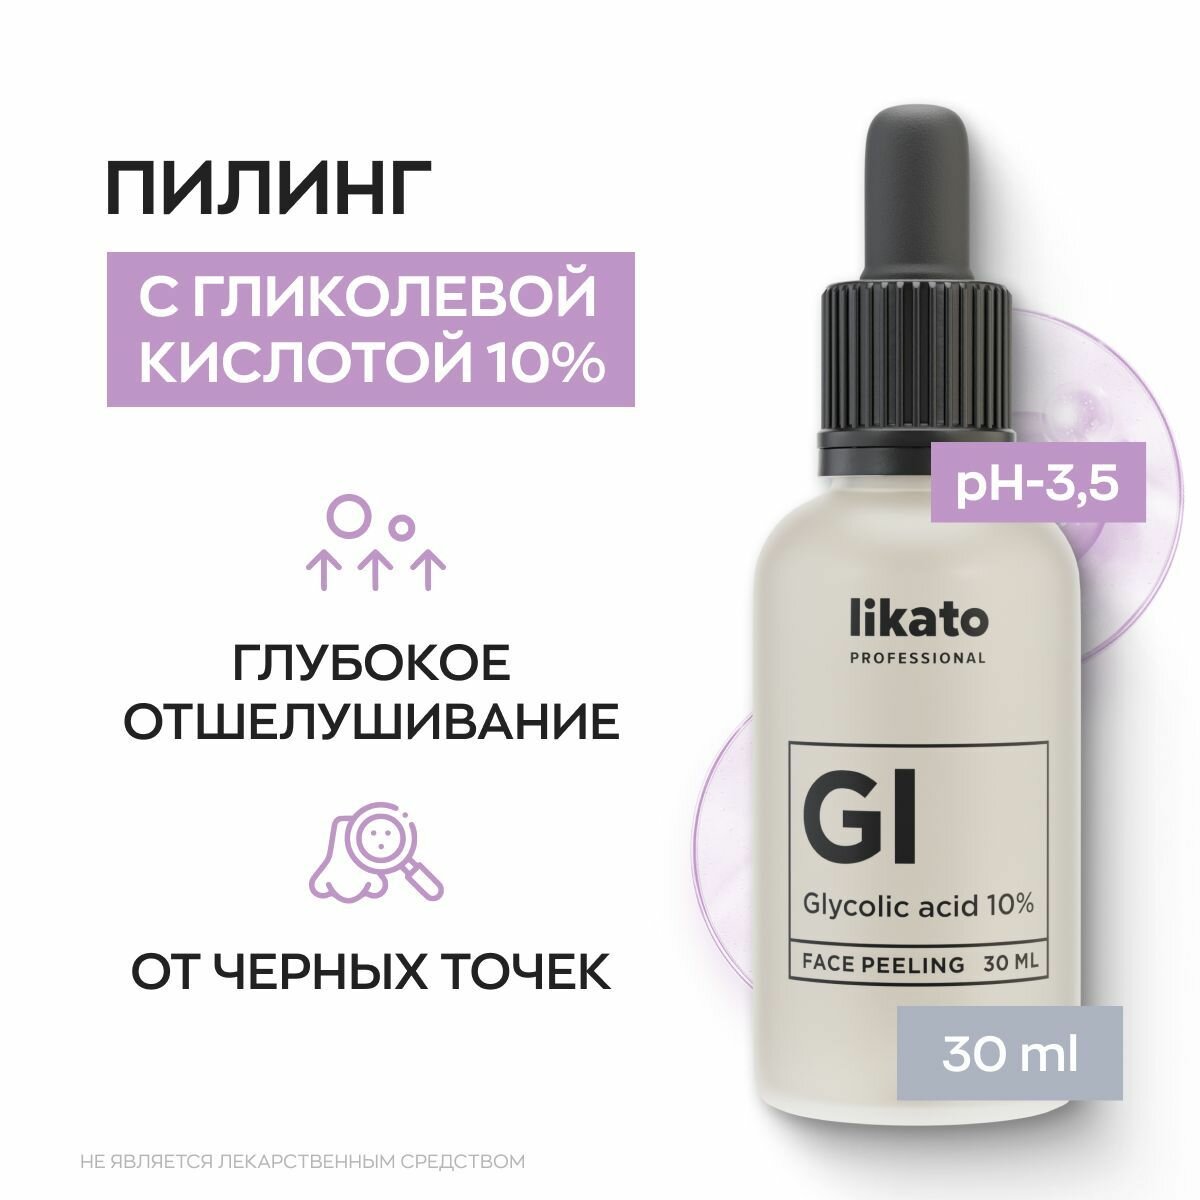 Likato Professional уходовая косметика: пилинг для лица с гликолевой кислотой 10%, от прыщей 30 мл